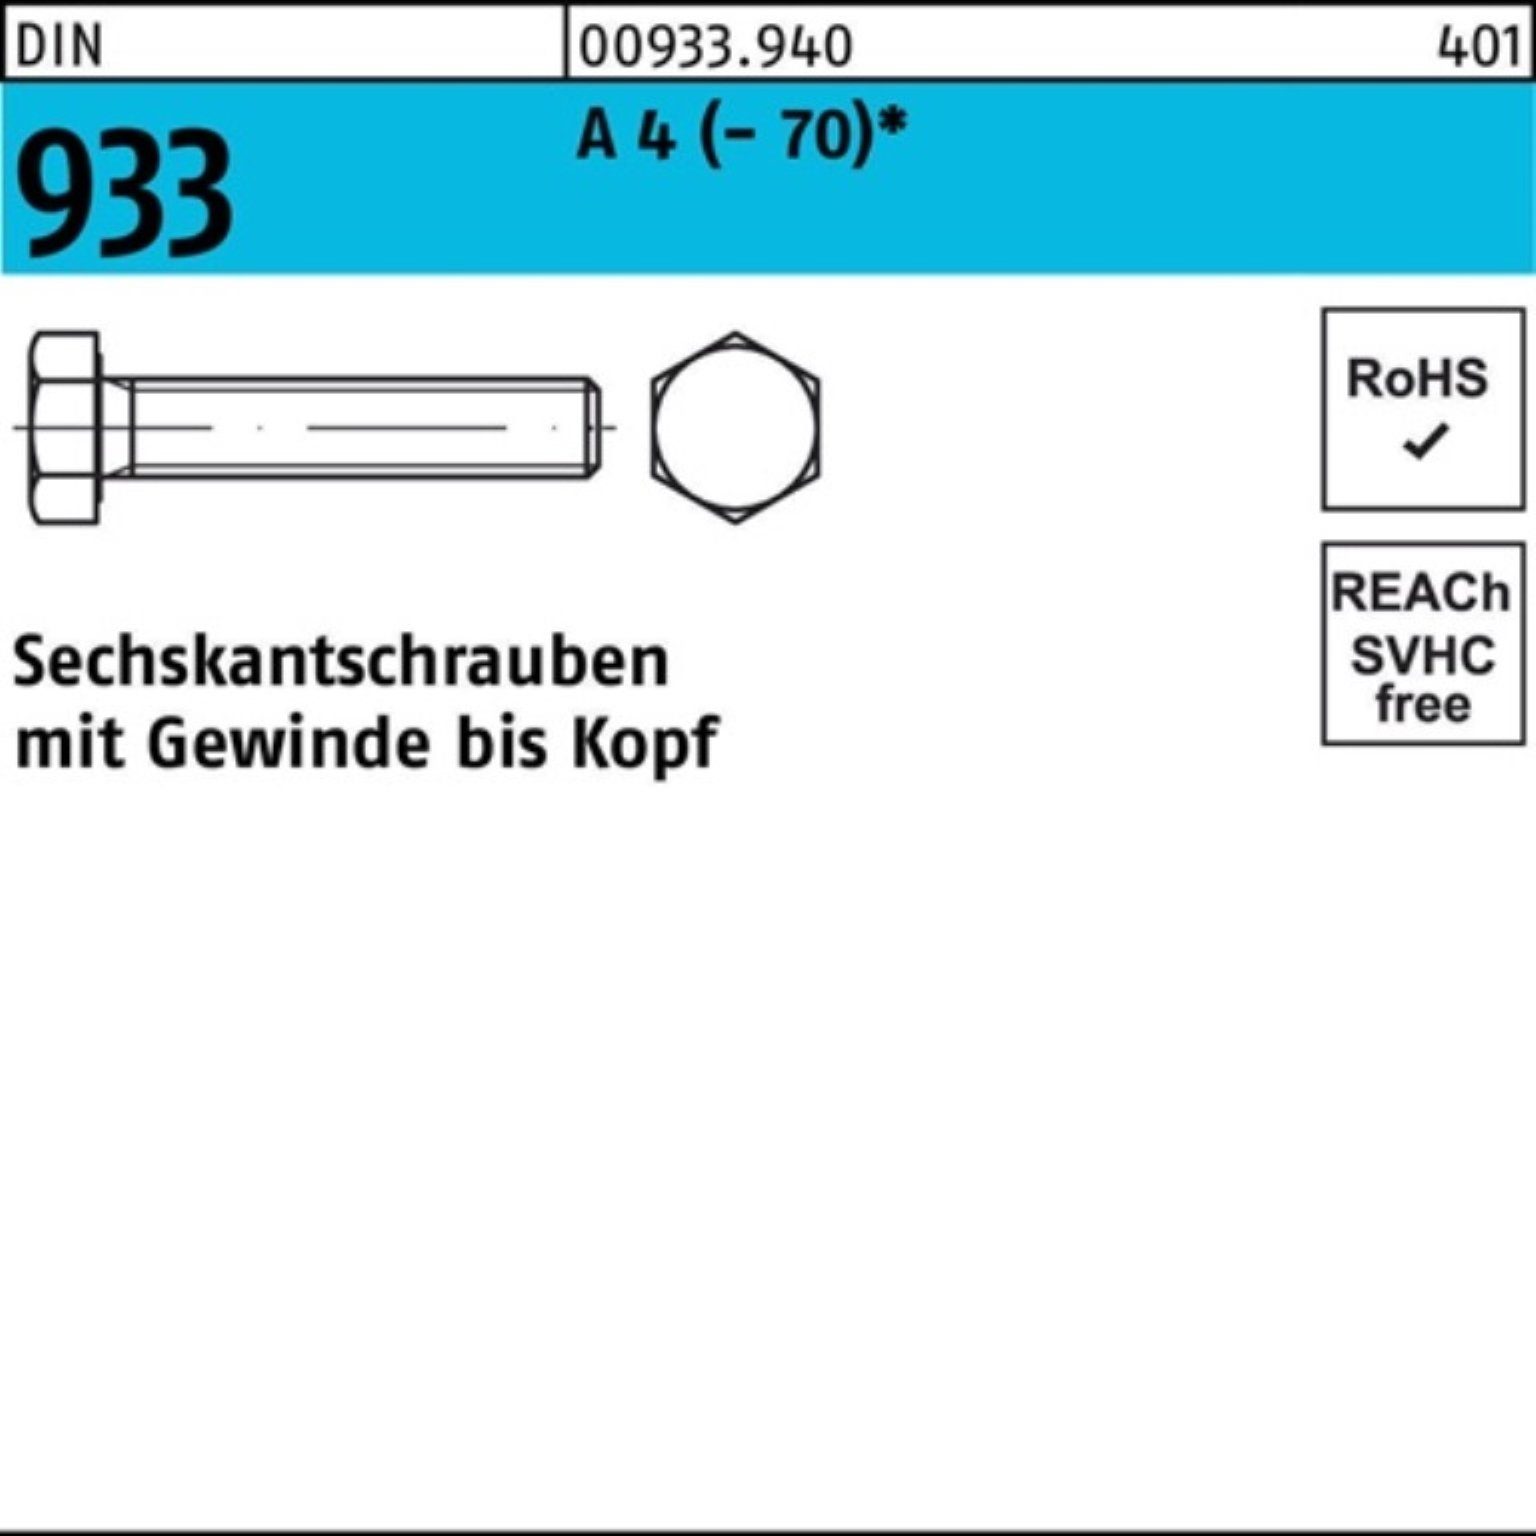 Reyher Sechskantschraube 100er Pack 933 120 4 (70) 1 VG Sechskantschraube DIN Stück M22x A D